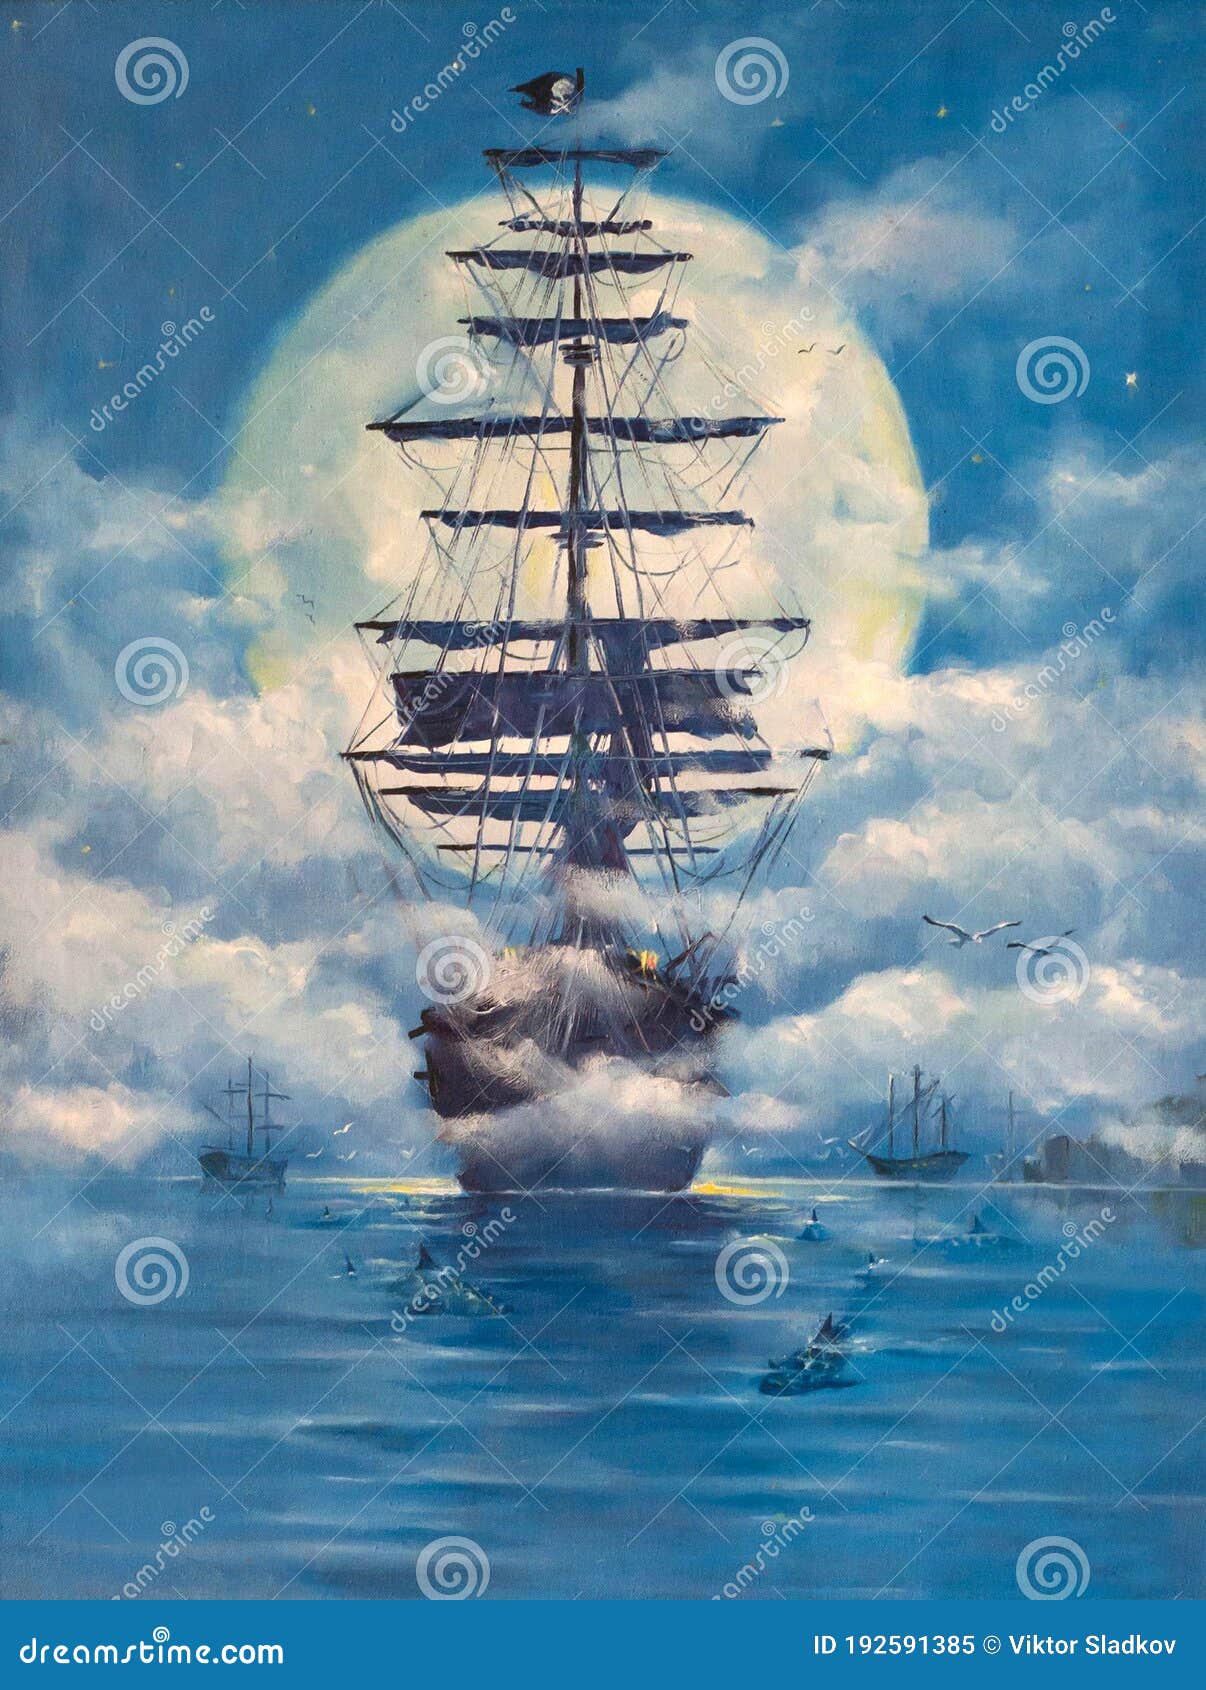 Imagen del lienzo-barco pirata